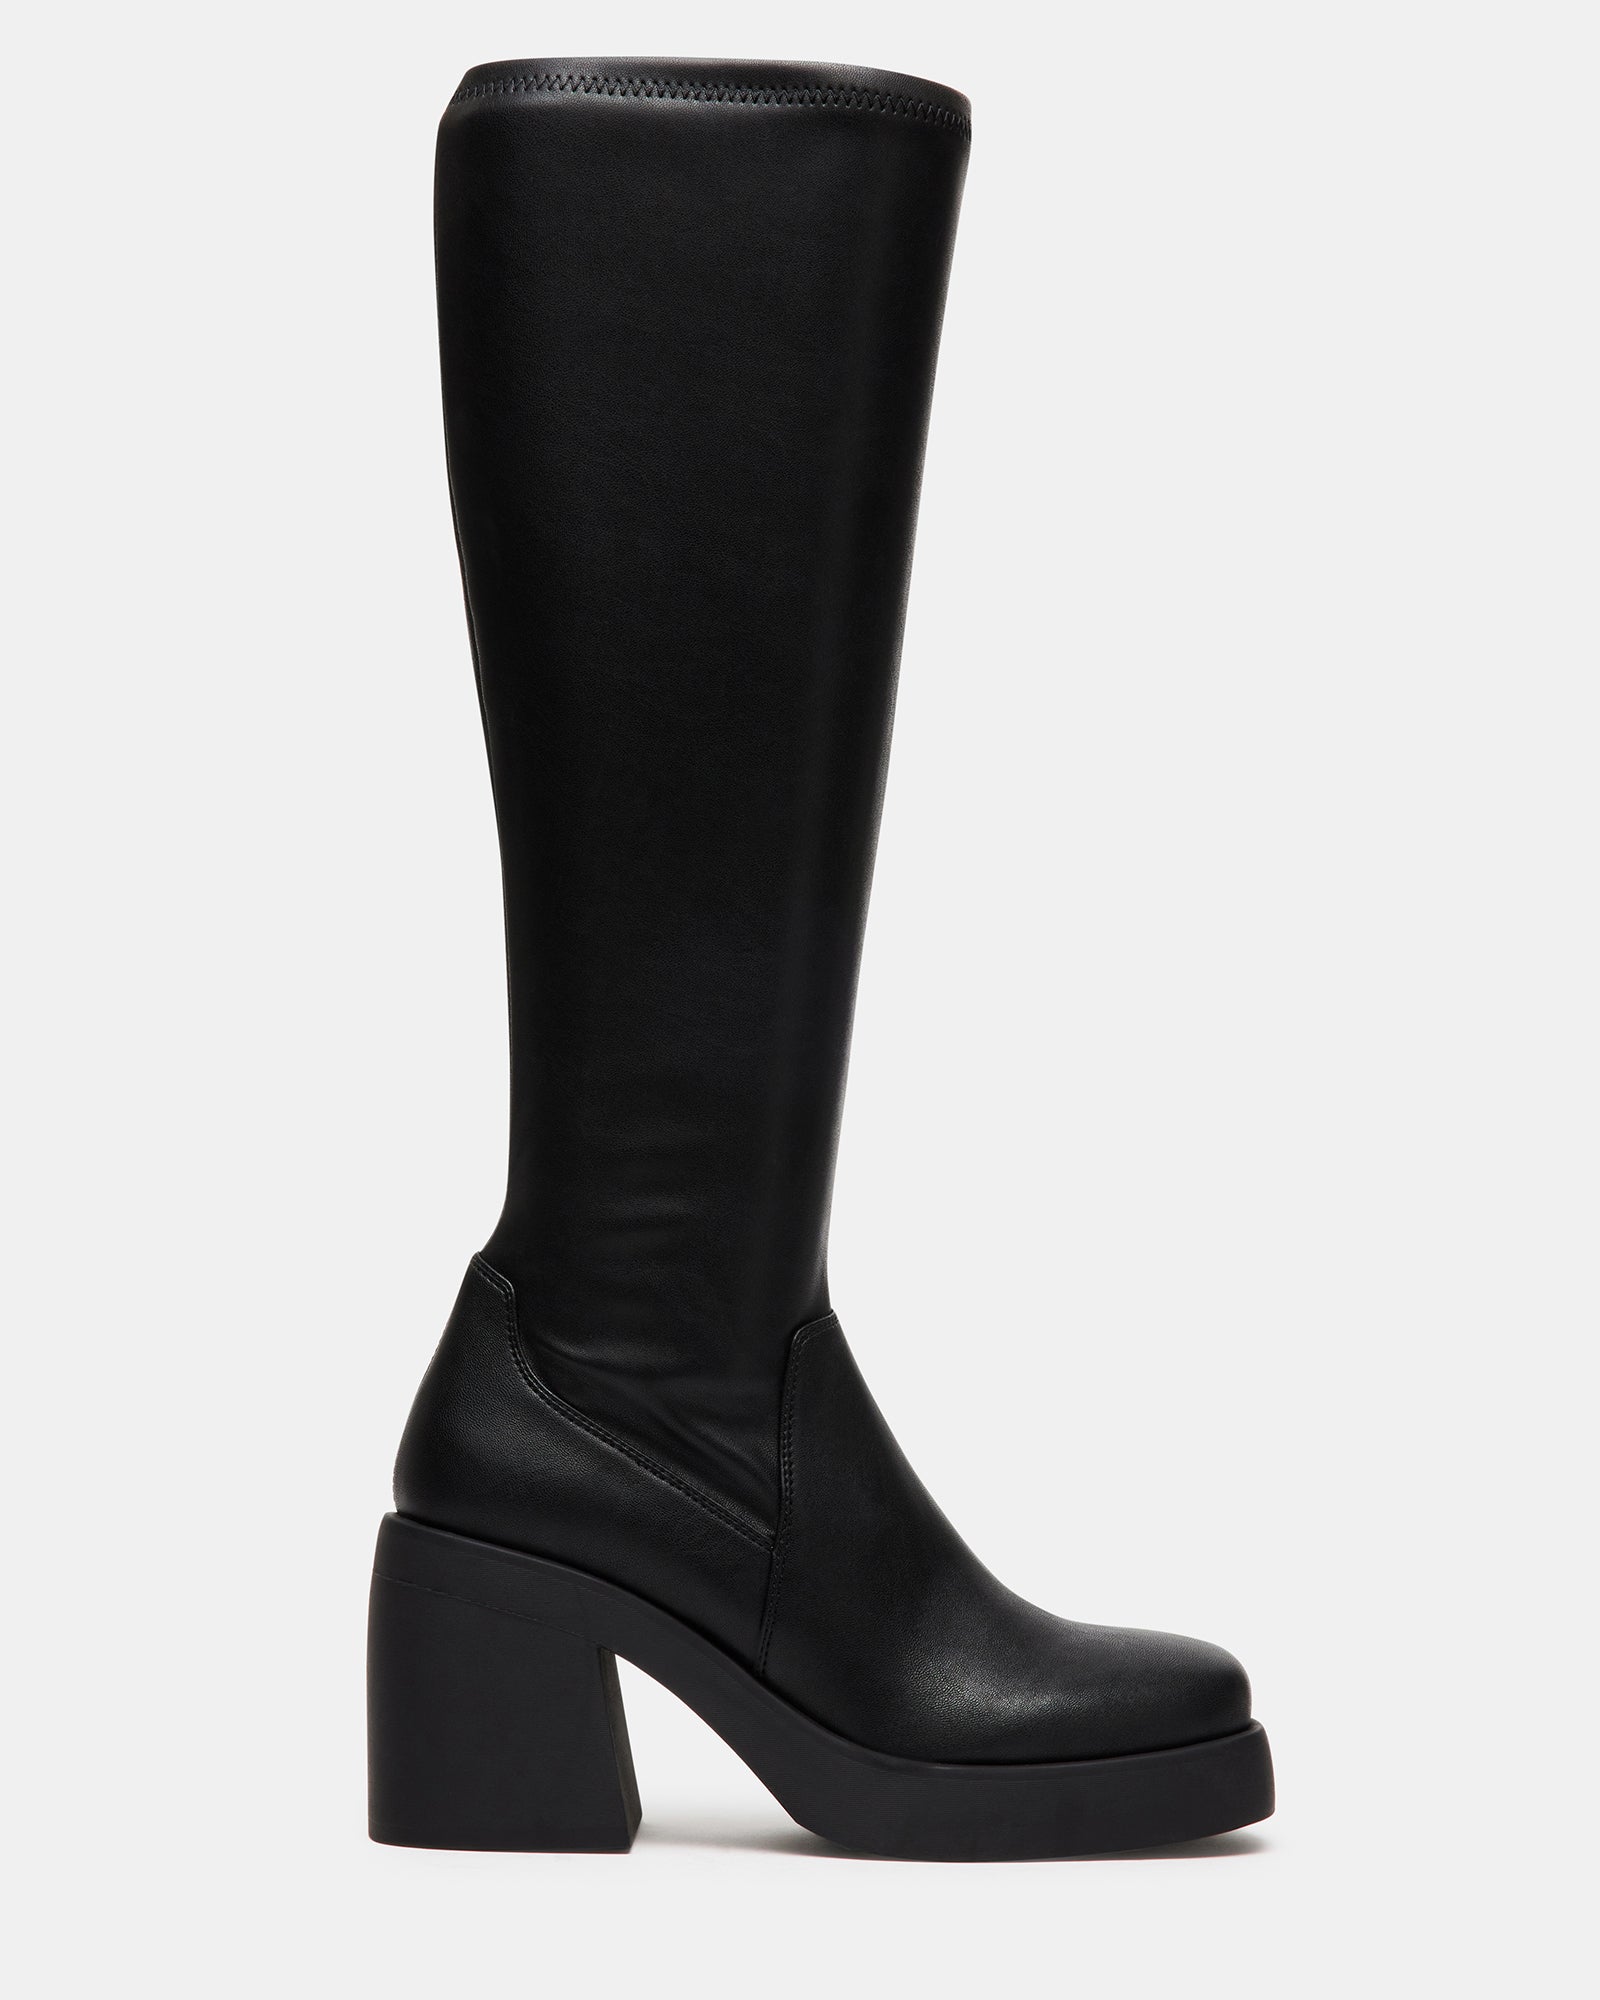 BERKLEIGH Black Wide Calf Knee High Boot | Women's Platform Boots ...